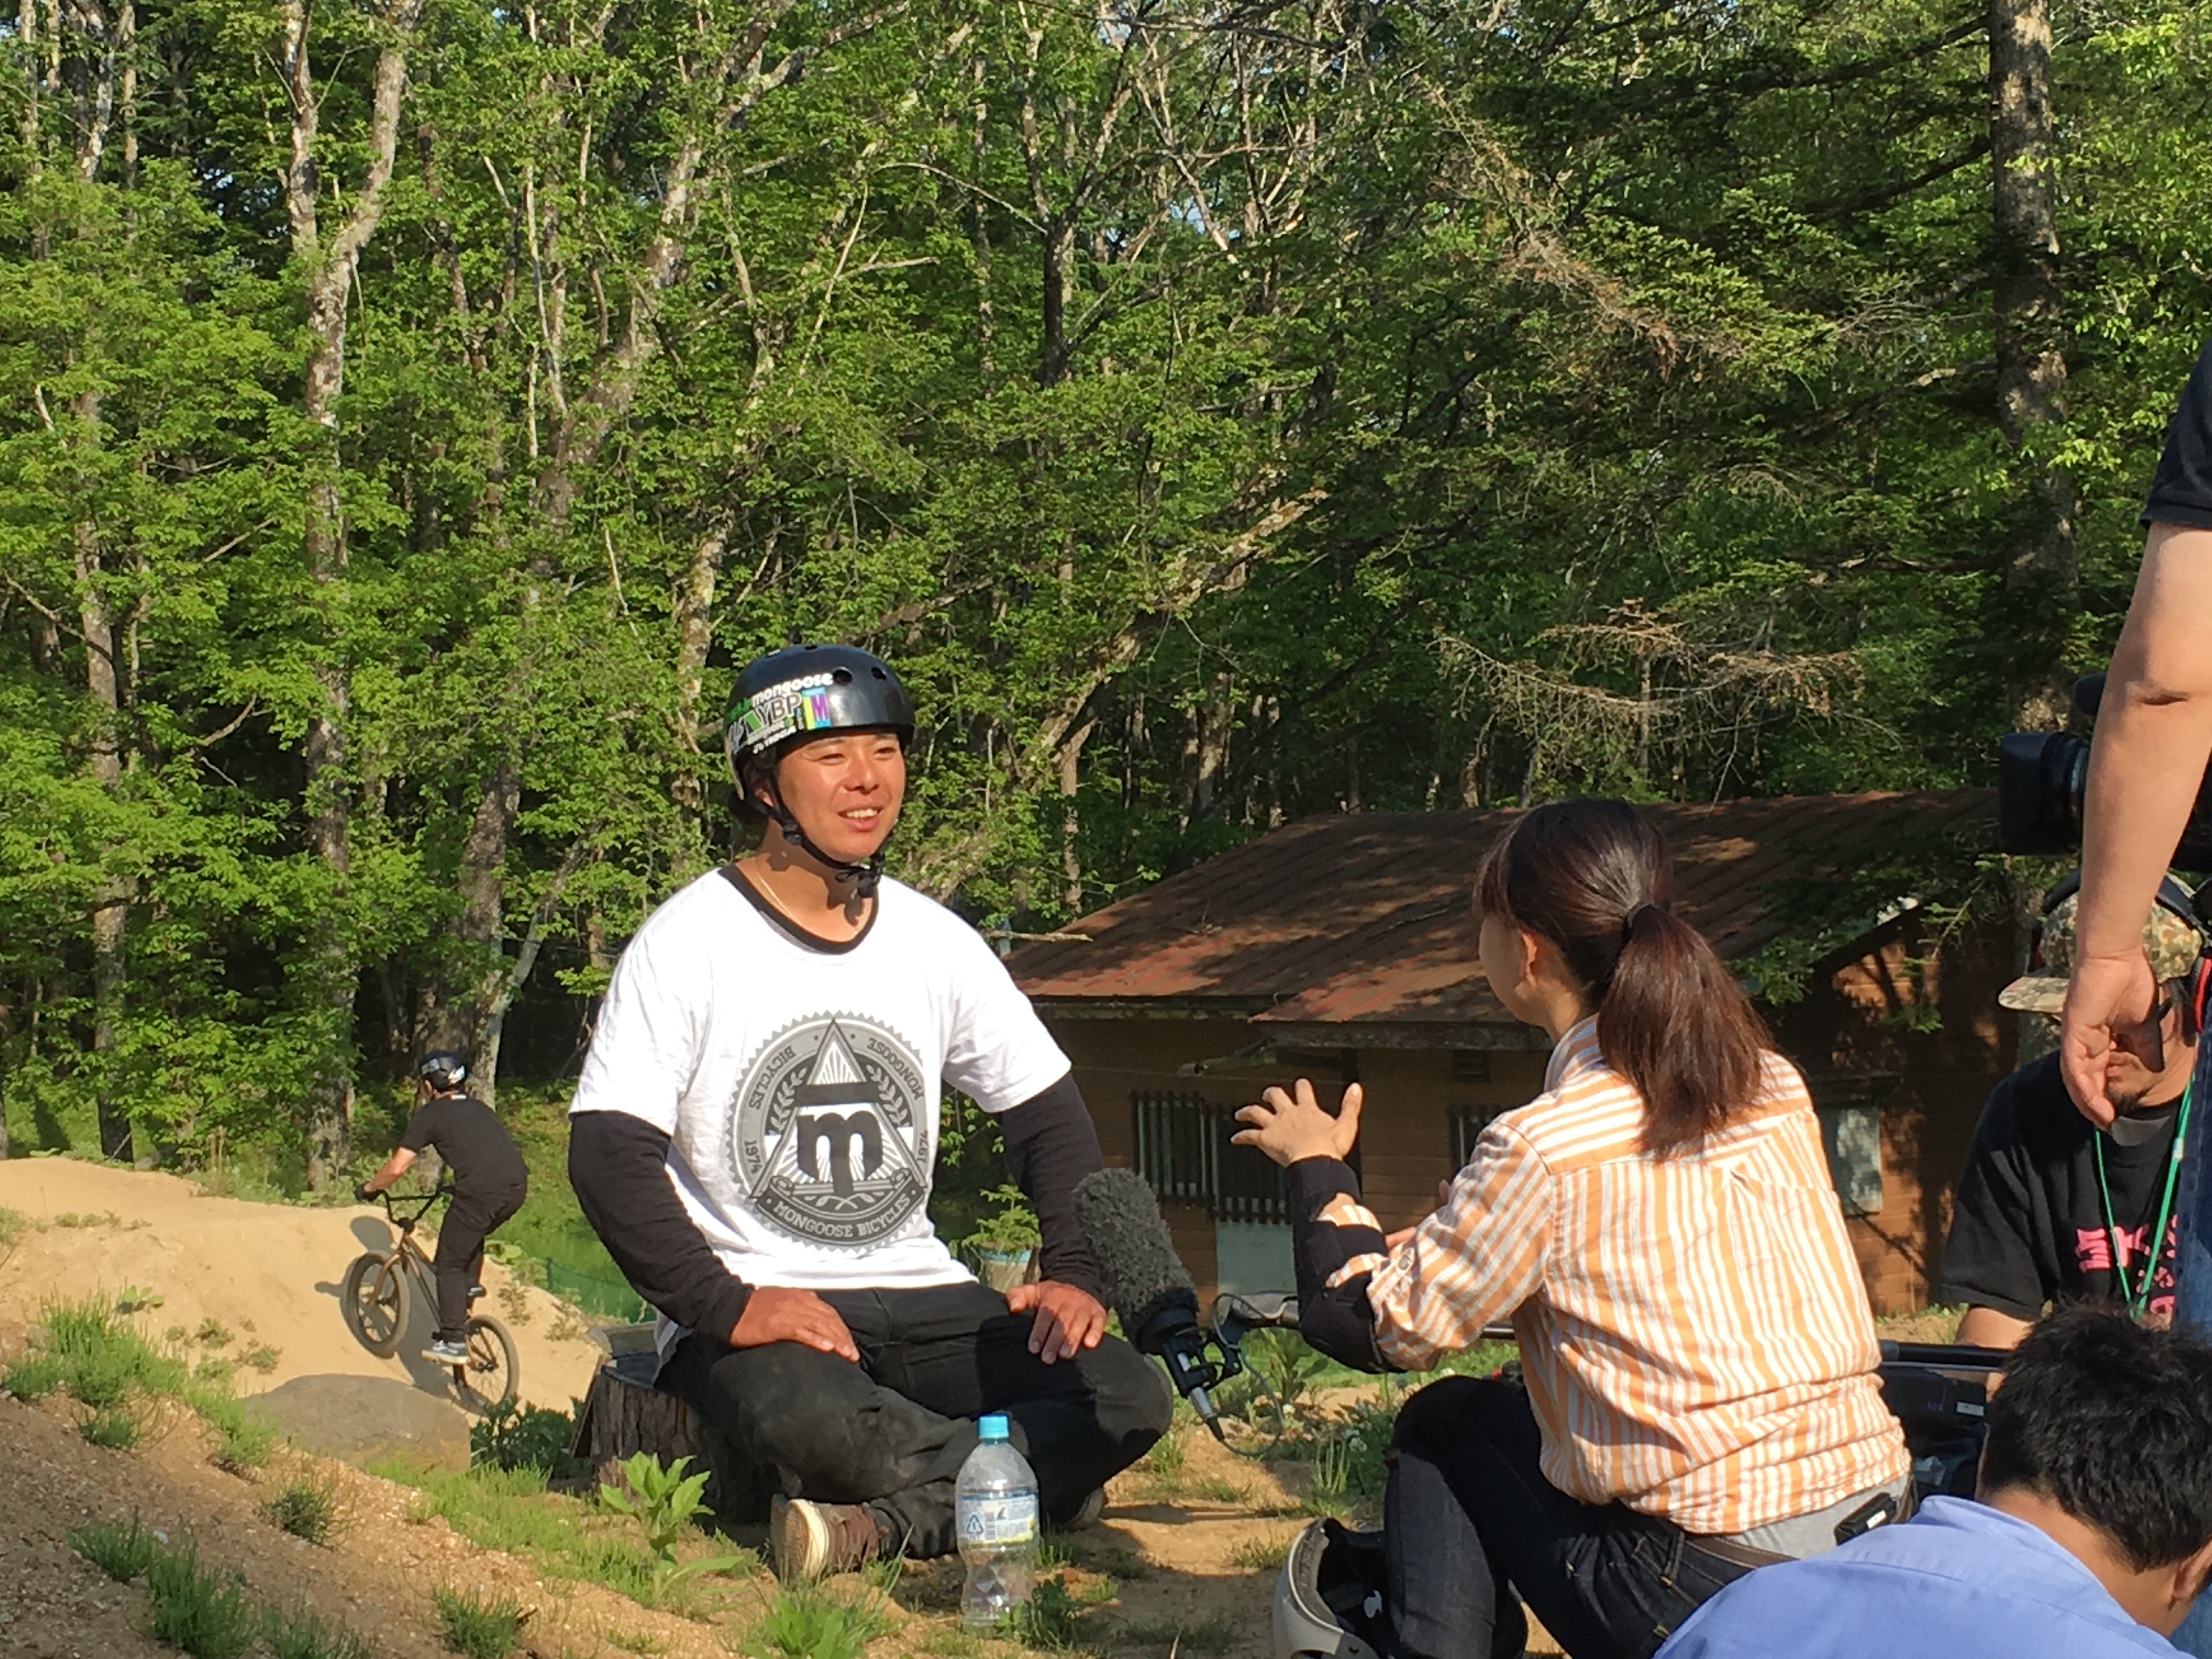 5月21日（土）NHK総合 おはよう日本 関東甲信越 コーナー「土曜すてき旅」北杜市 八ヶ岳南麓 にてYBPが紹介されます。